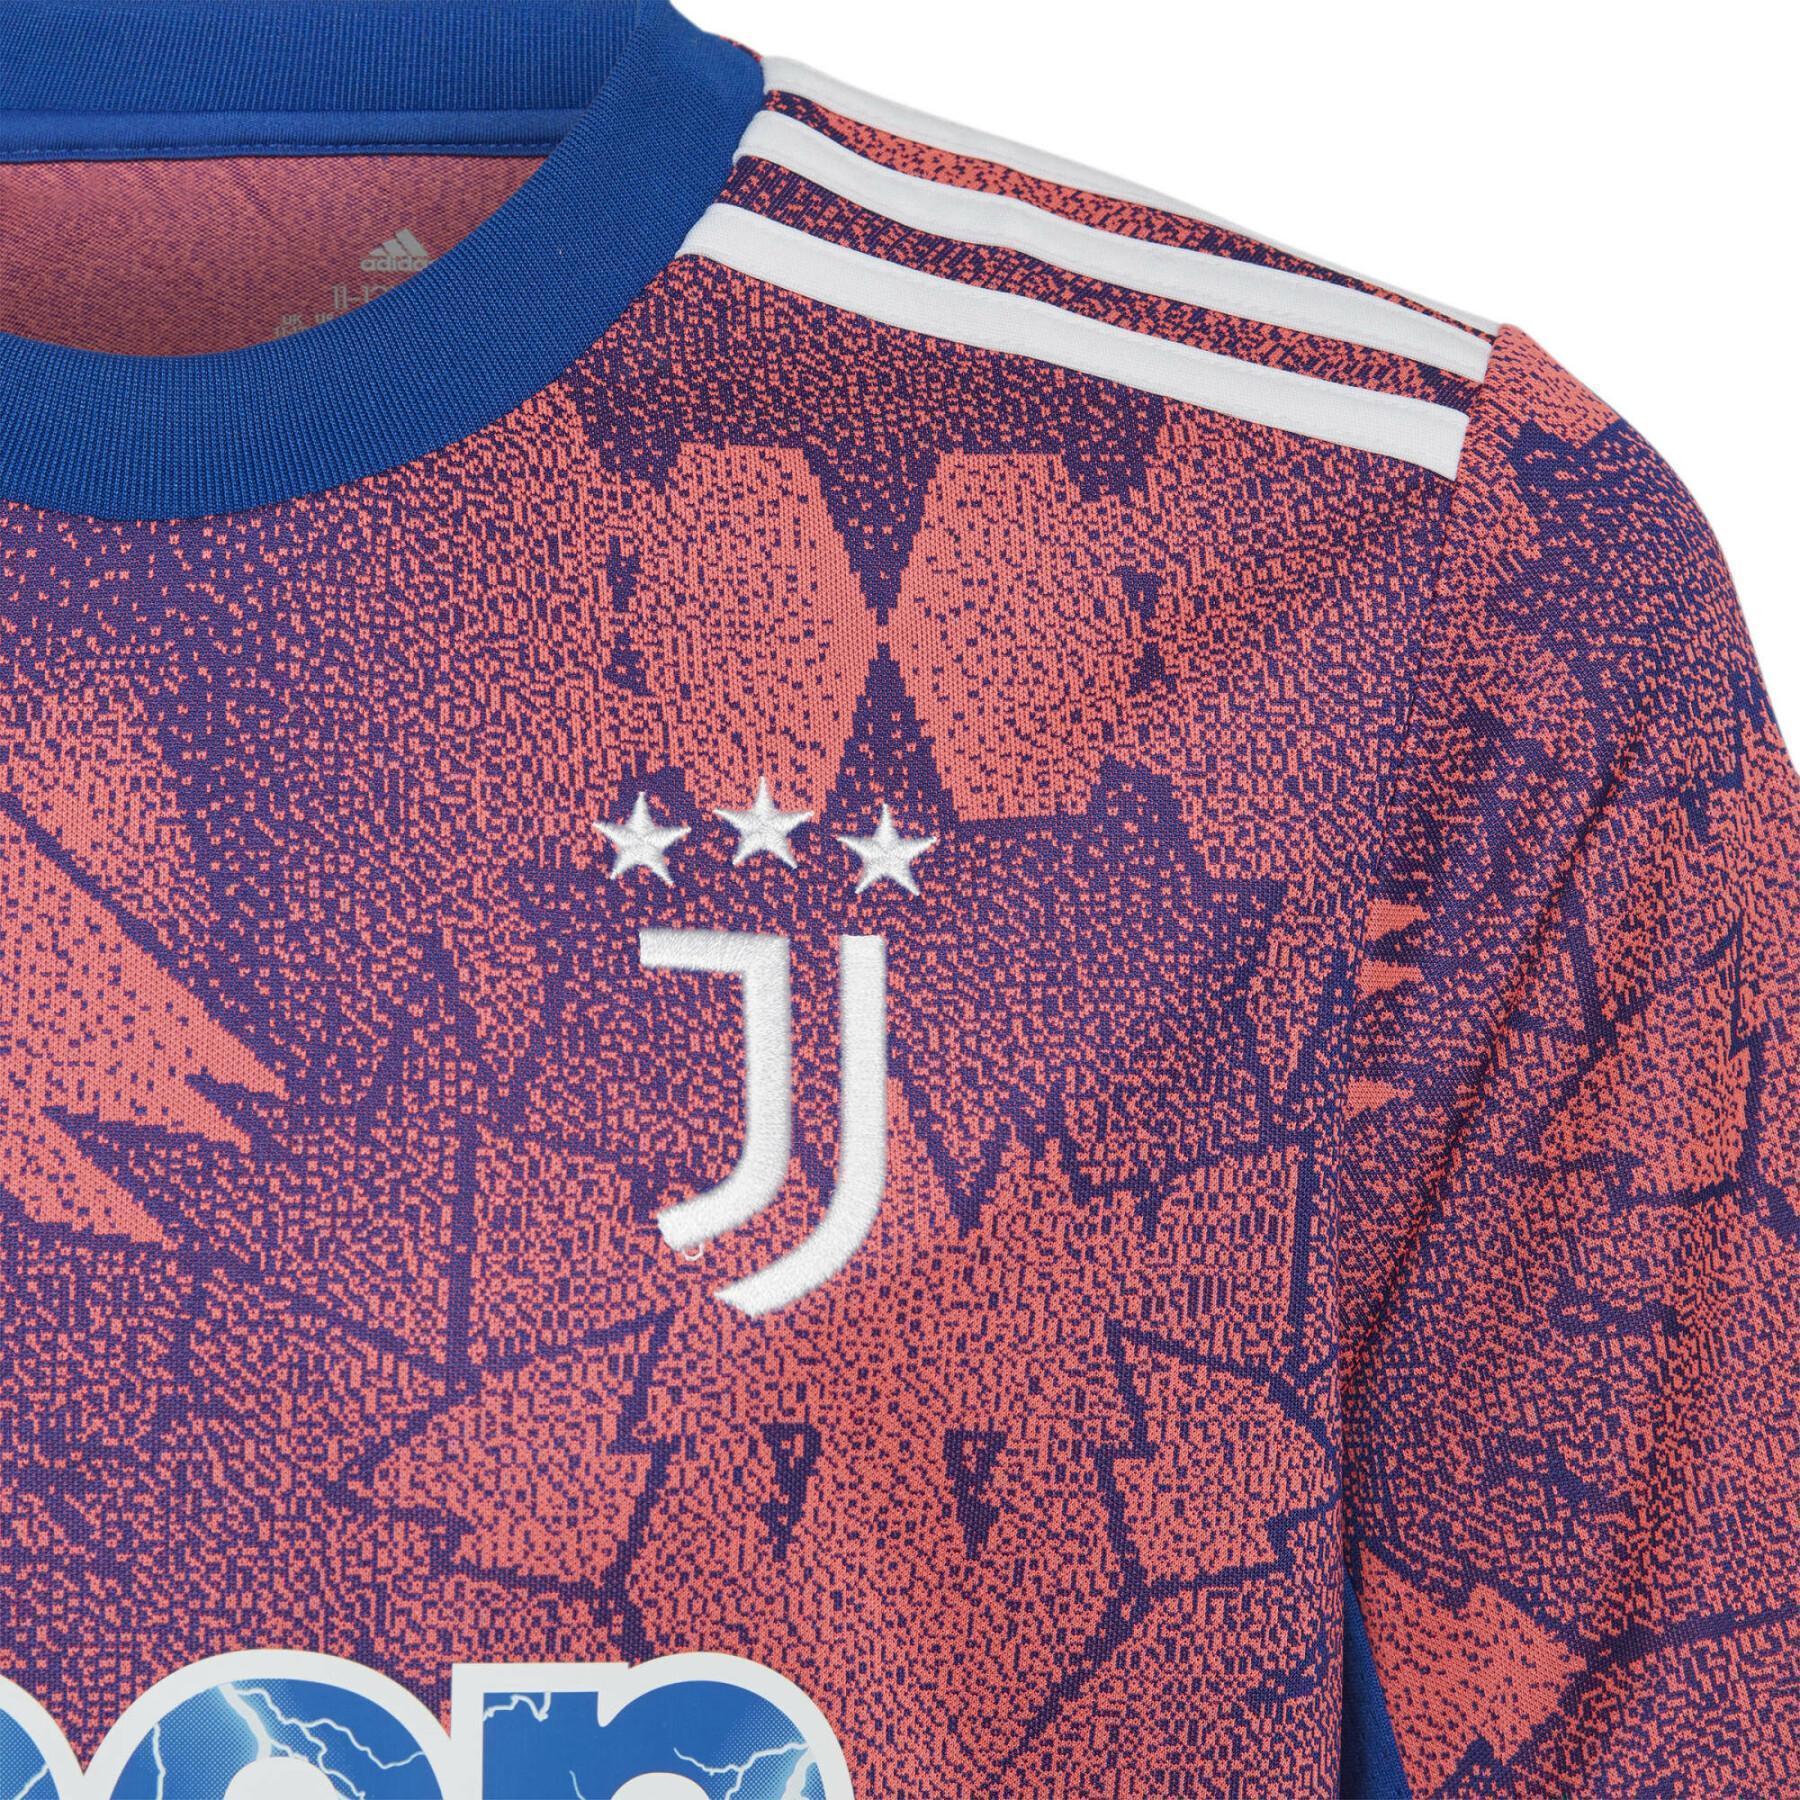 Barnens tredje tröja Juventus Turin 2022/23